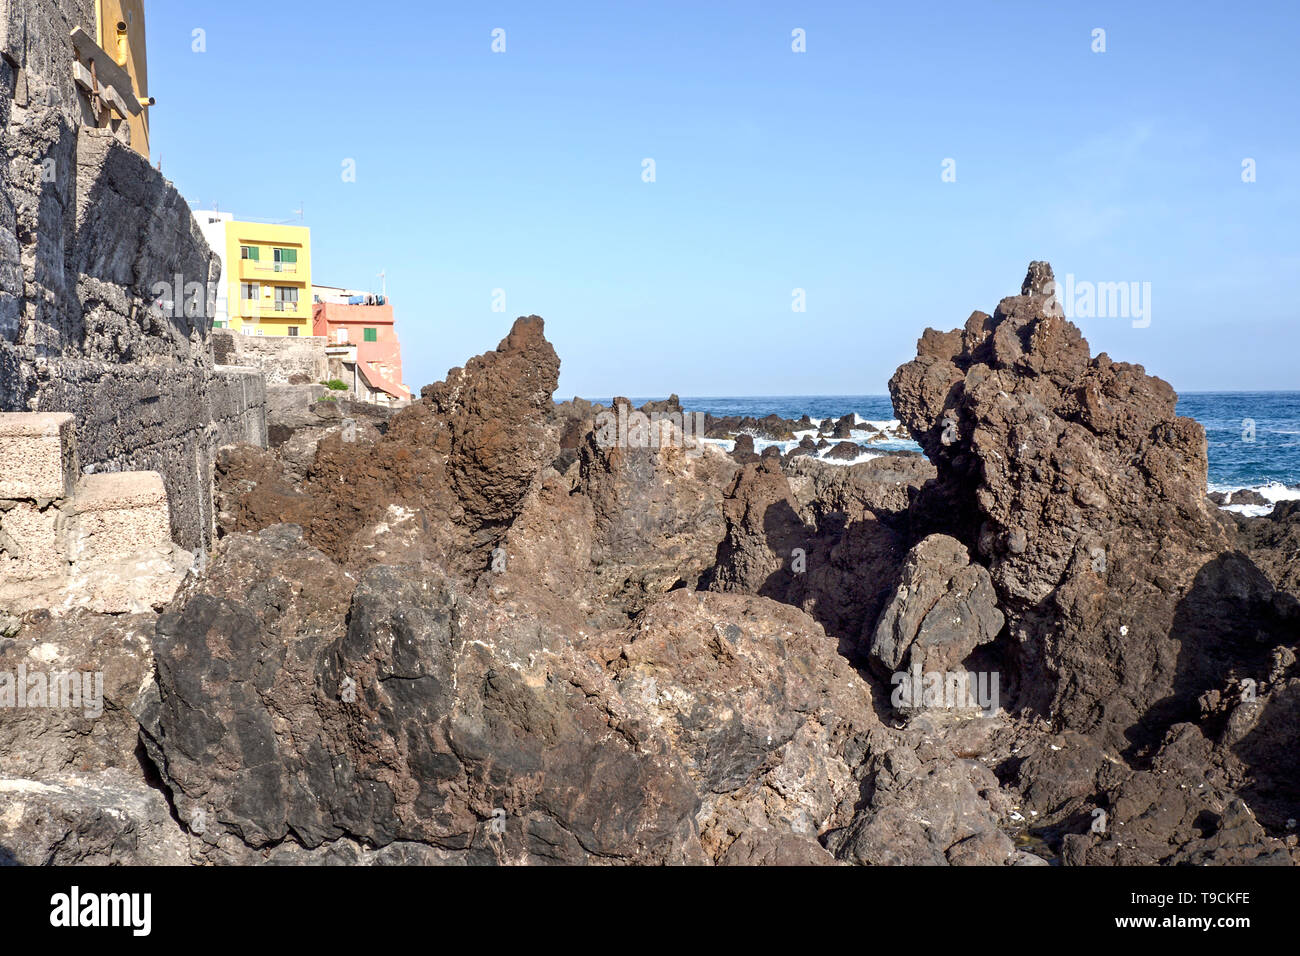 Die bizarr geformten schwarzen vulkanischen Steinen am Ufer des Atlantiks auf der Punta Brava in Teneriffa. Zwei bunte Häuser sind auf der linken Seite, ein p Stockfoto